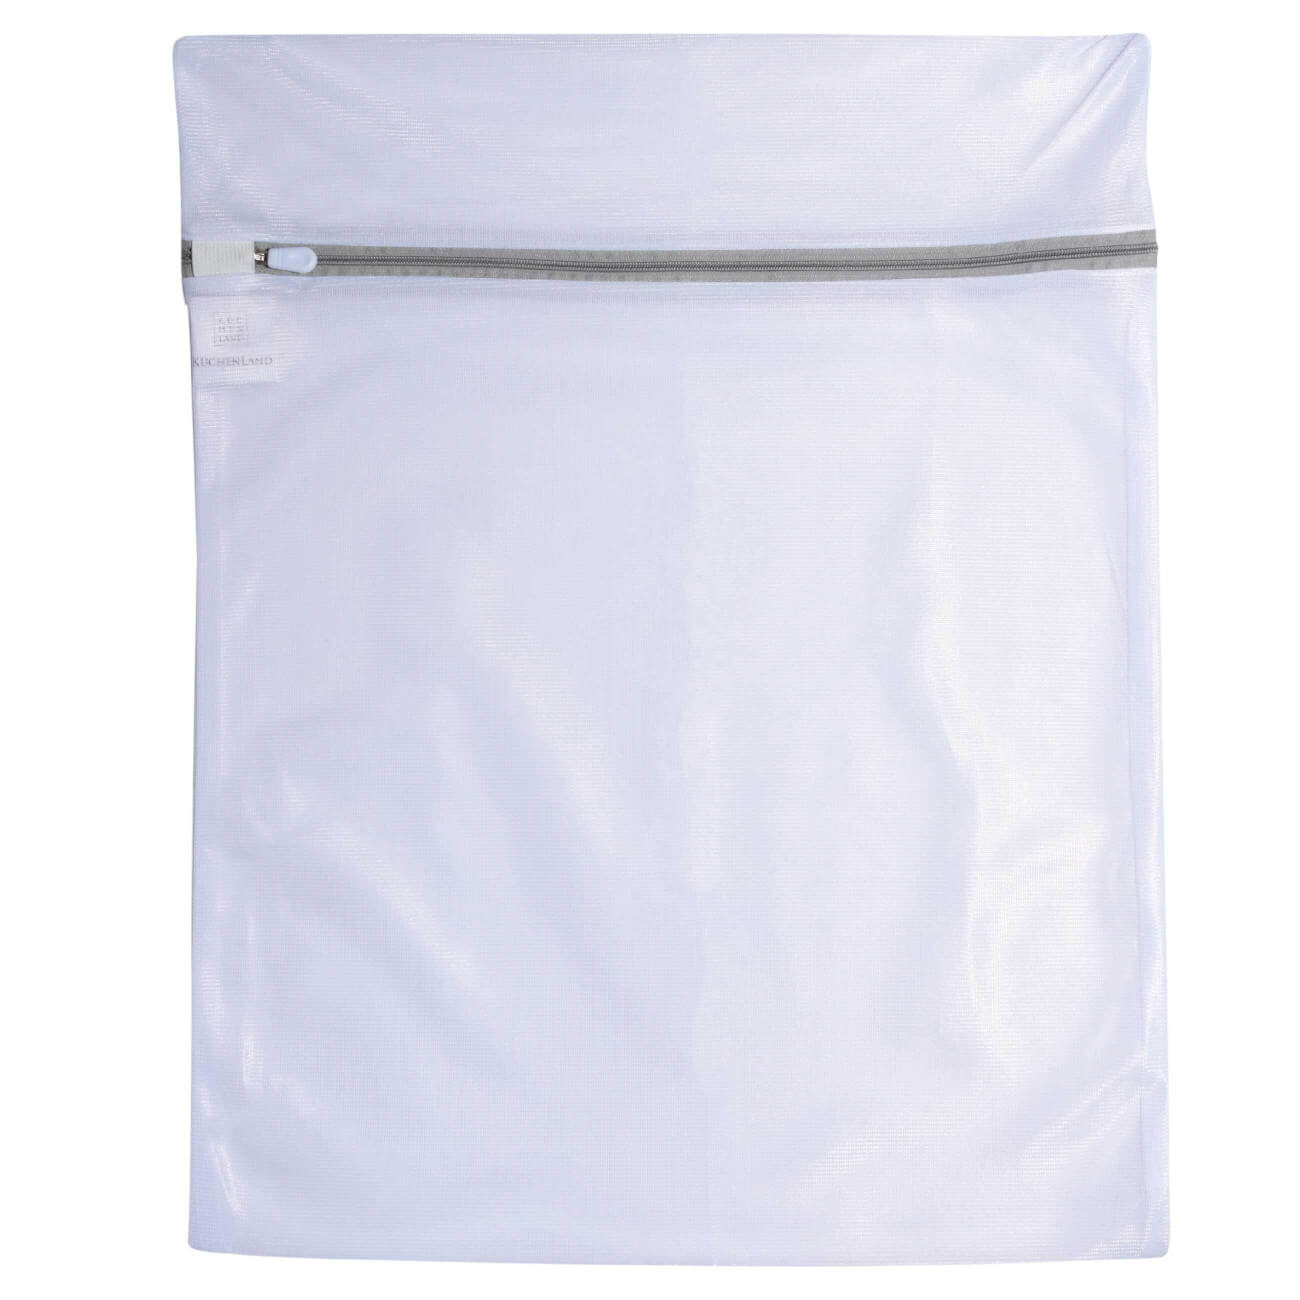 Мешок для стирки одежды, 40х50 см, полиэстер, бело-серый, Safety plus kuchenland мешок для стирки носков и колготок 34х15 см двойной полиэстер safety plus